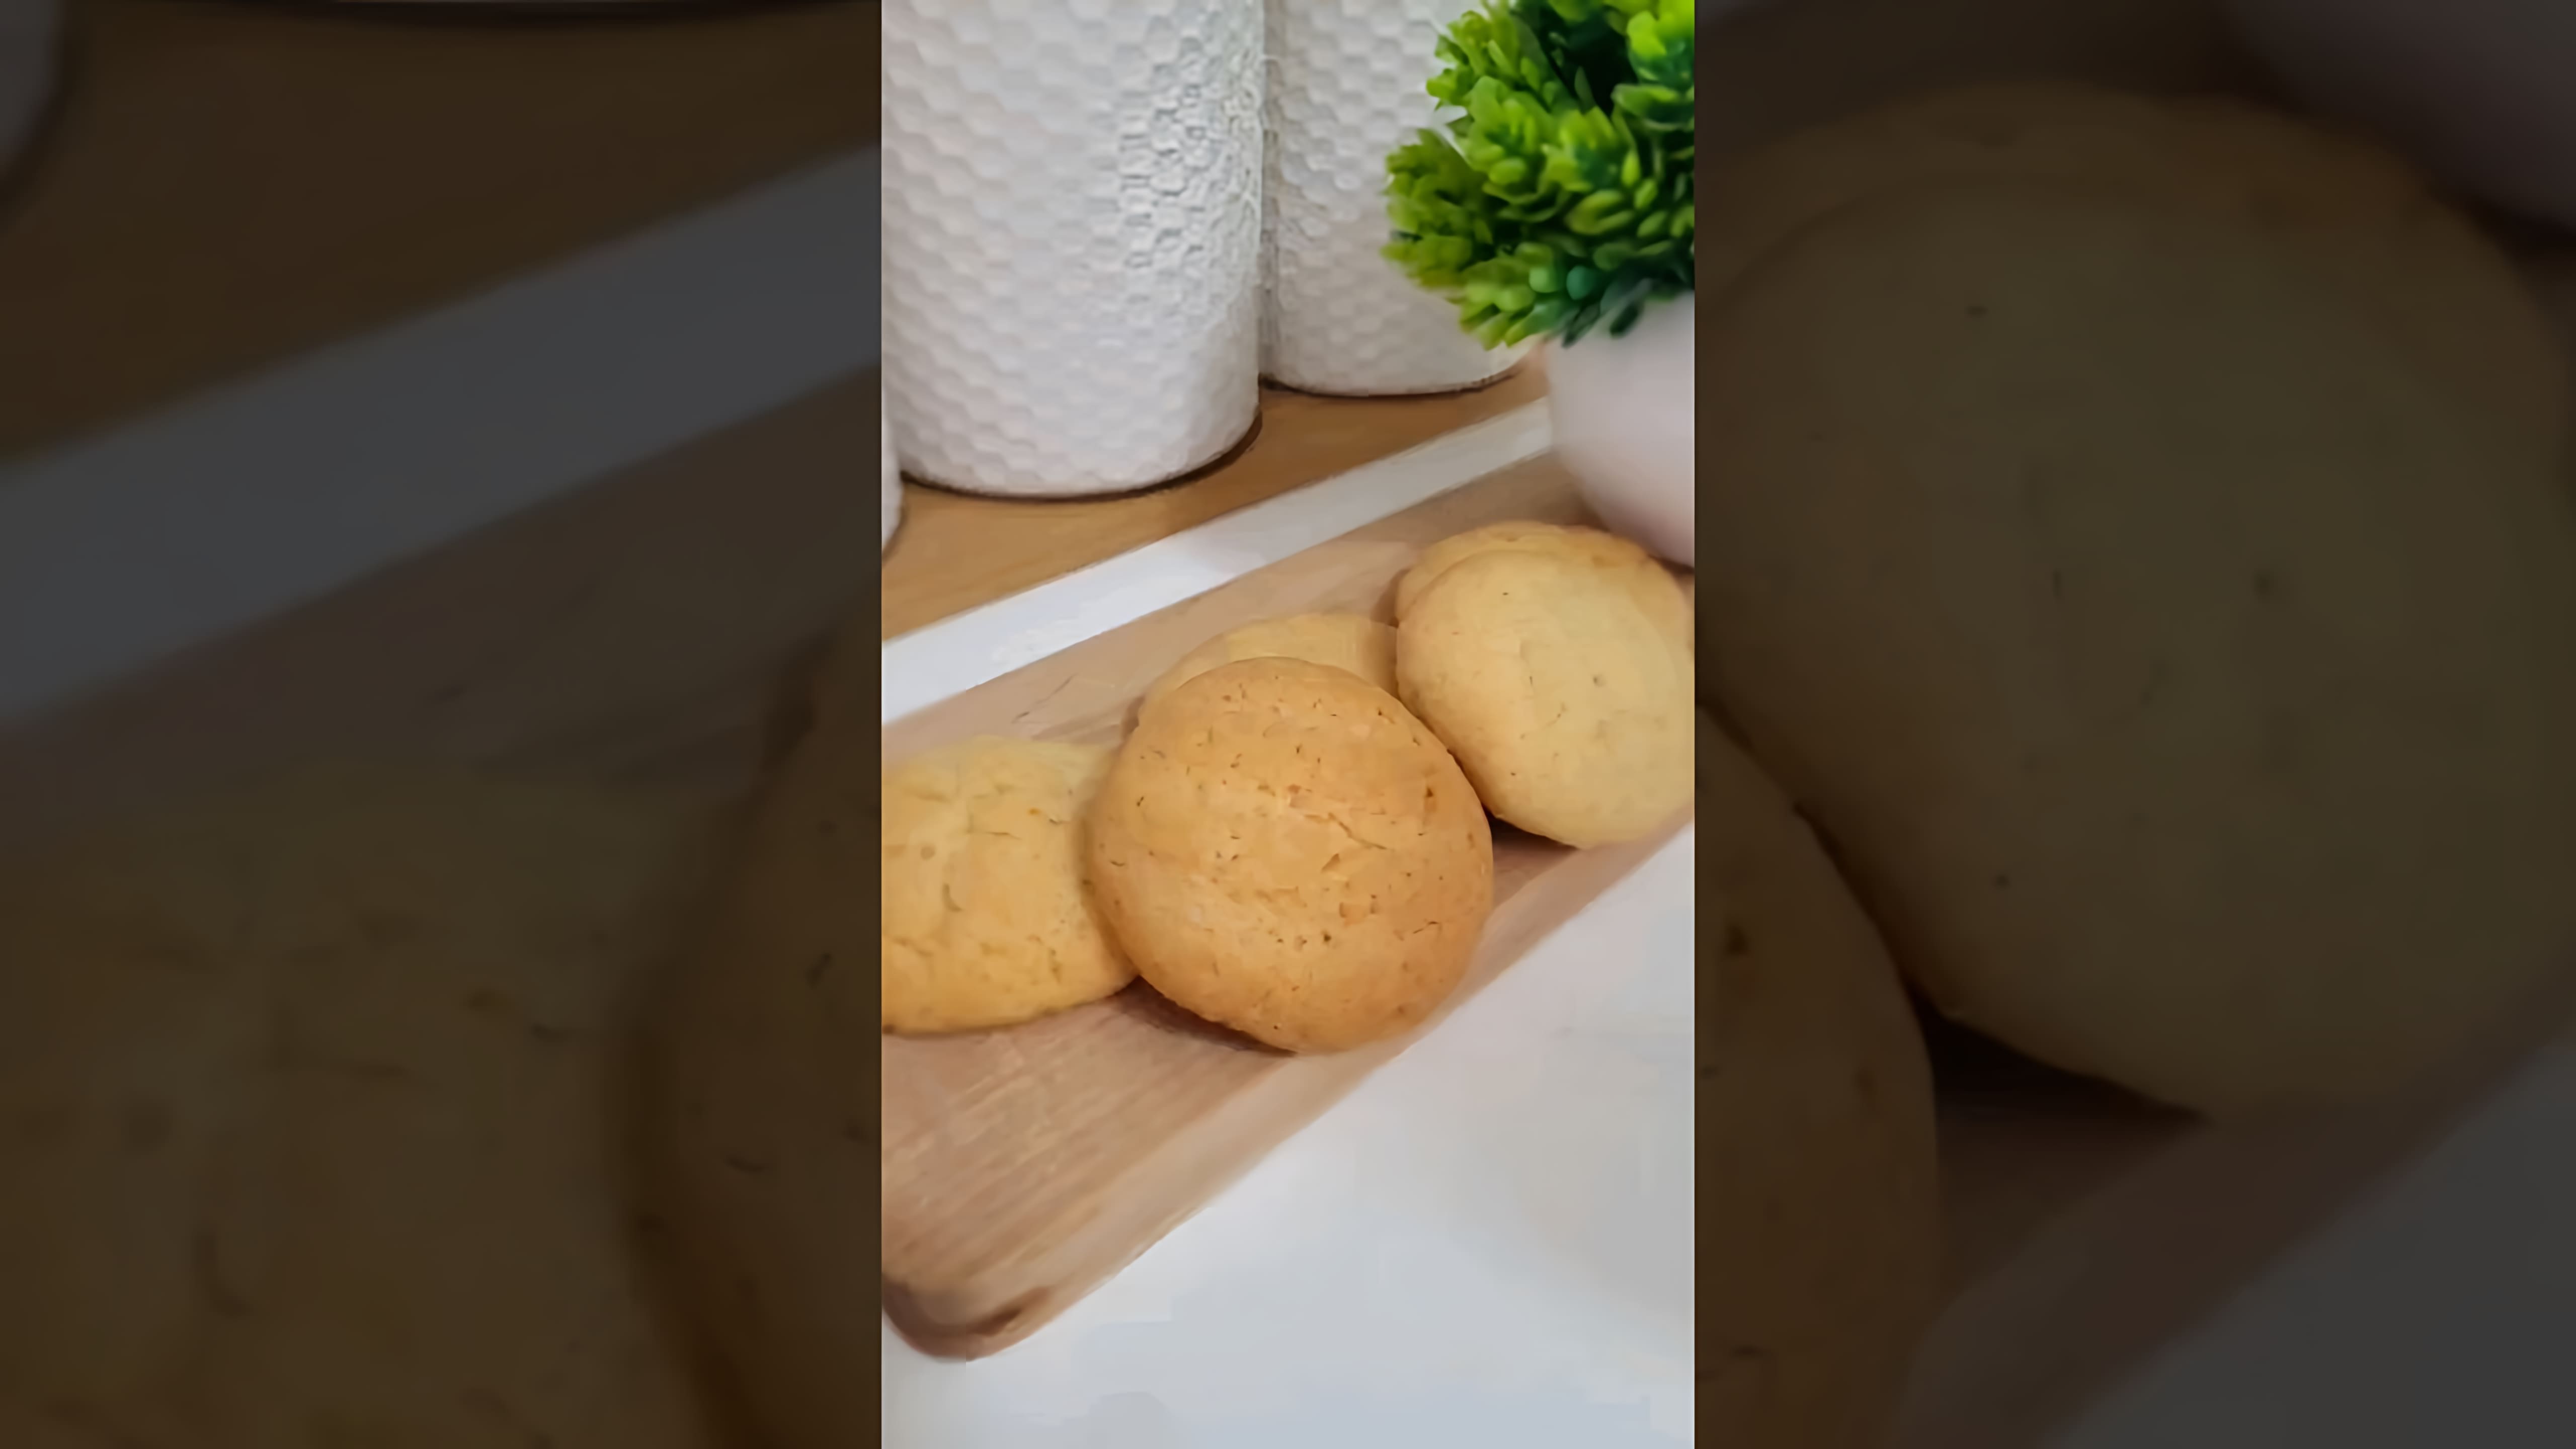 В этом видео демонстрируется процесс приготовления бюджетного песочного печенья